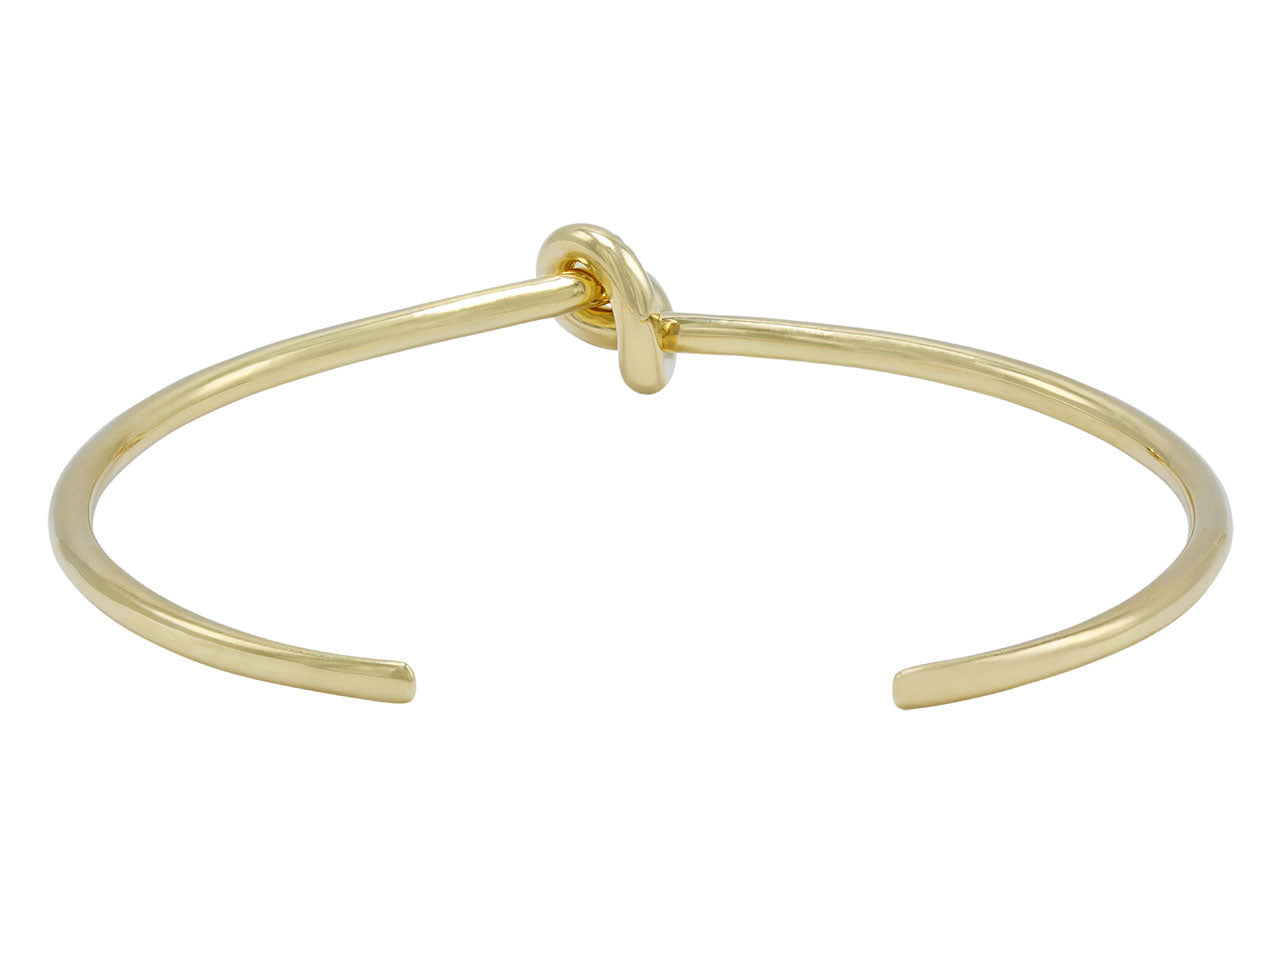 Diamond Knot Bangle Bracelet in 18K Gold, by Beladora